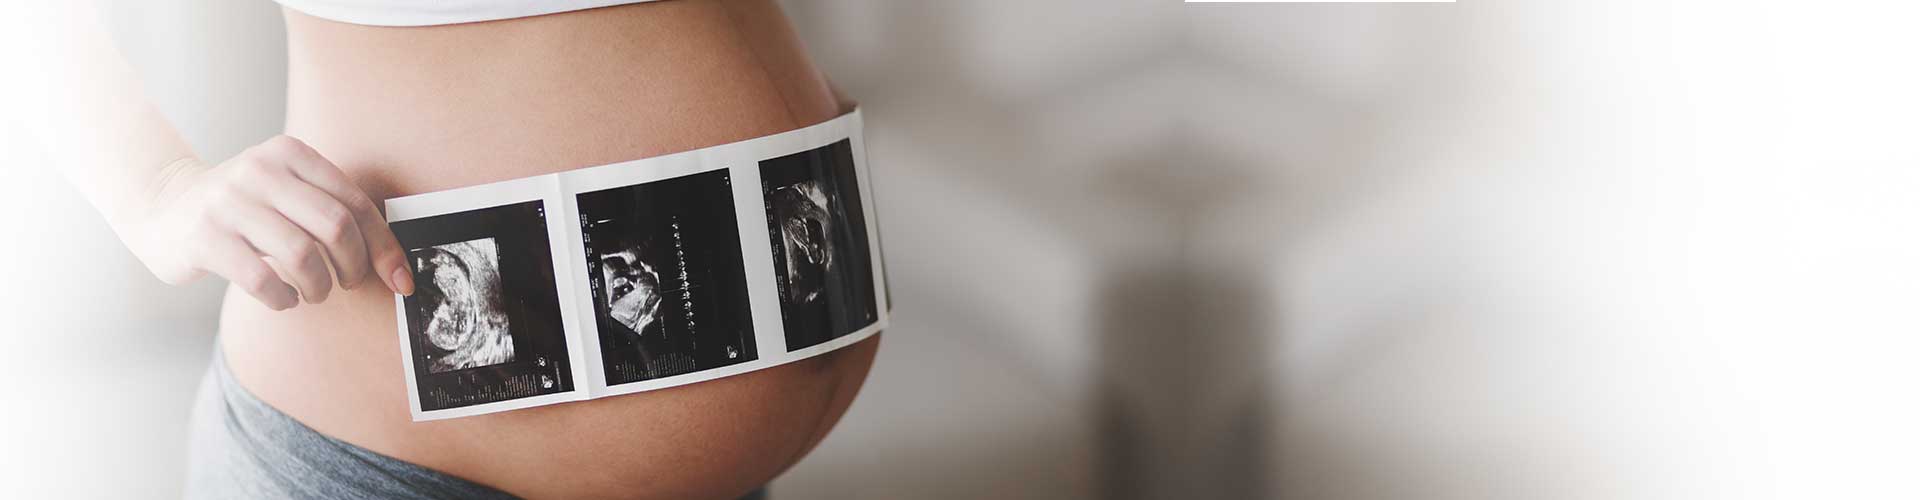 Από τη σύλληψη έως τη γέννηση: Μια ματιά στα στάδια της εγκυμοσύνης